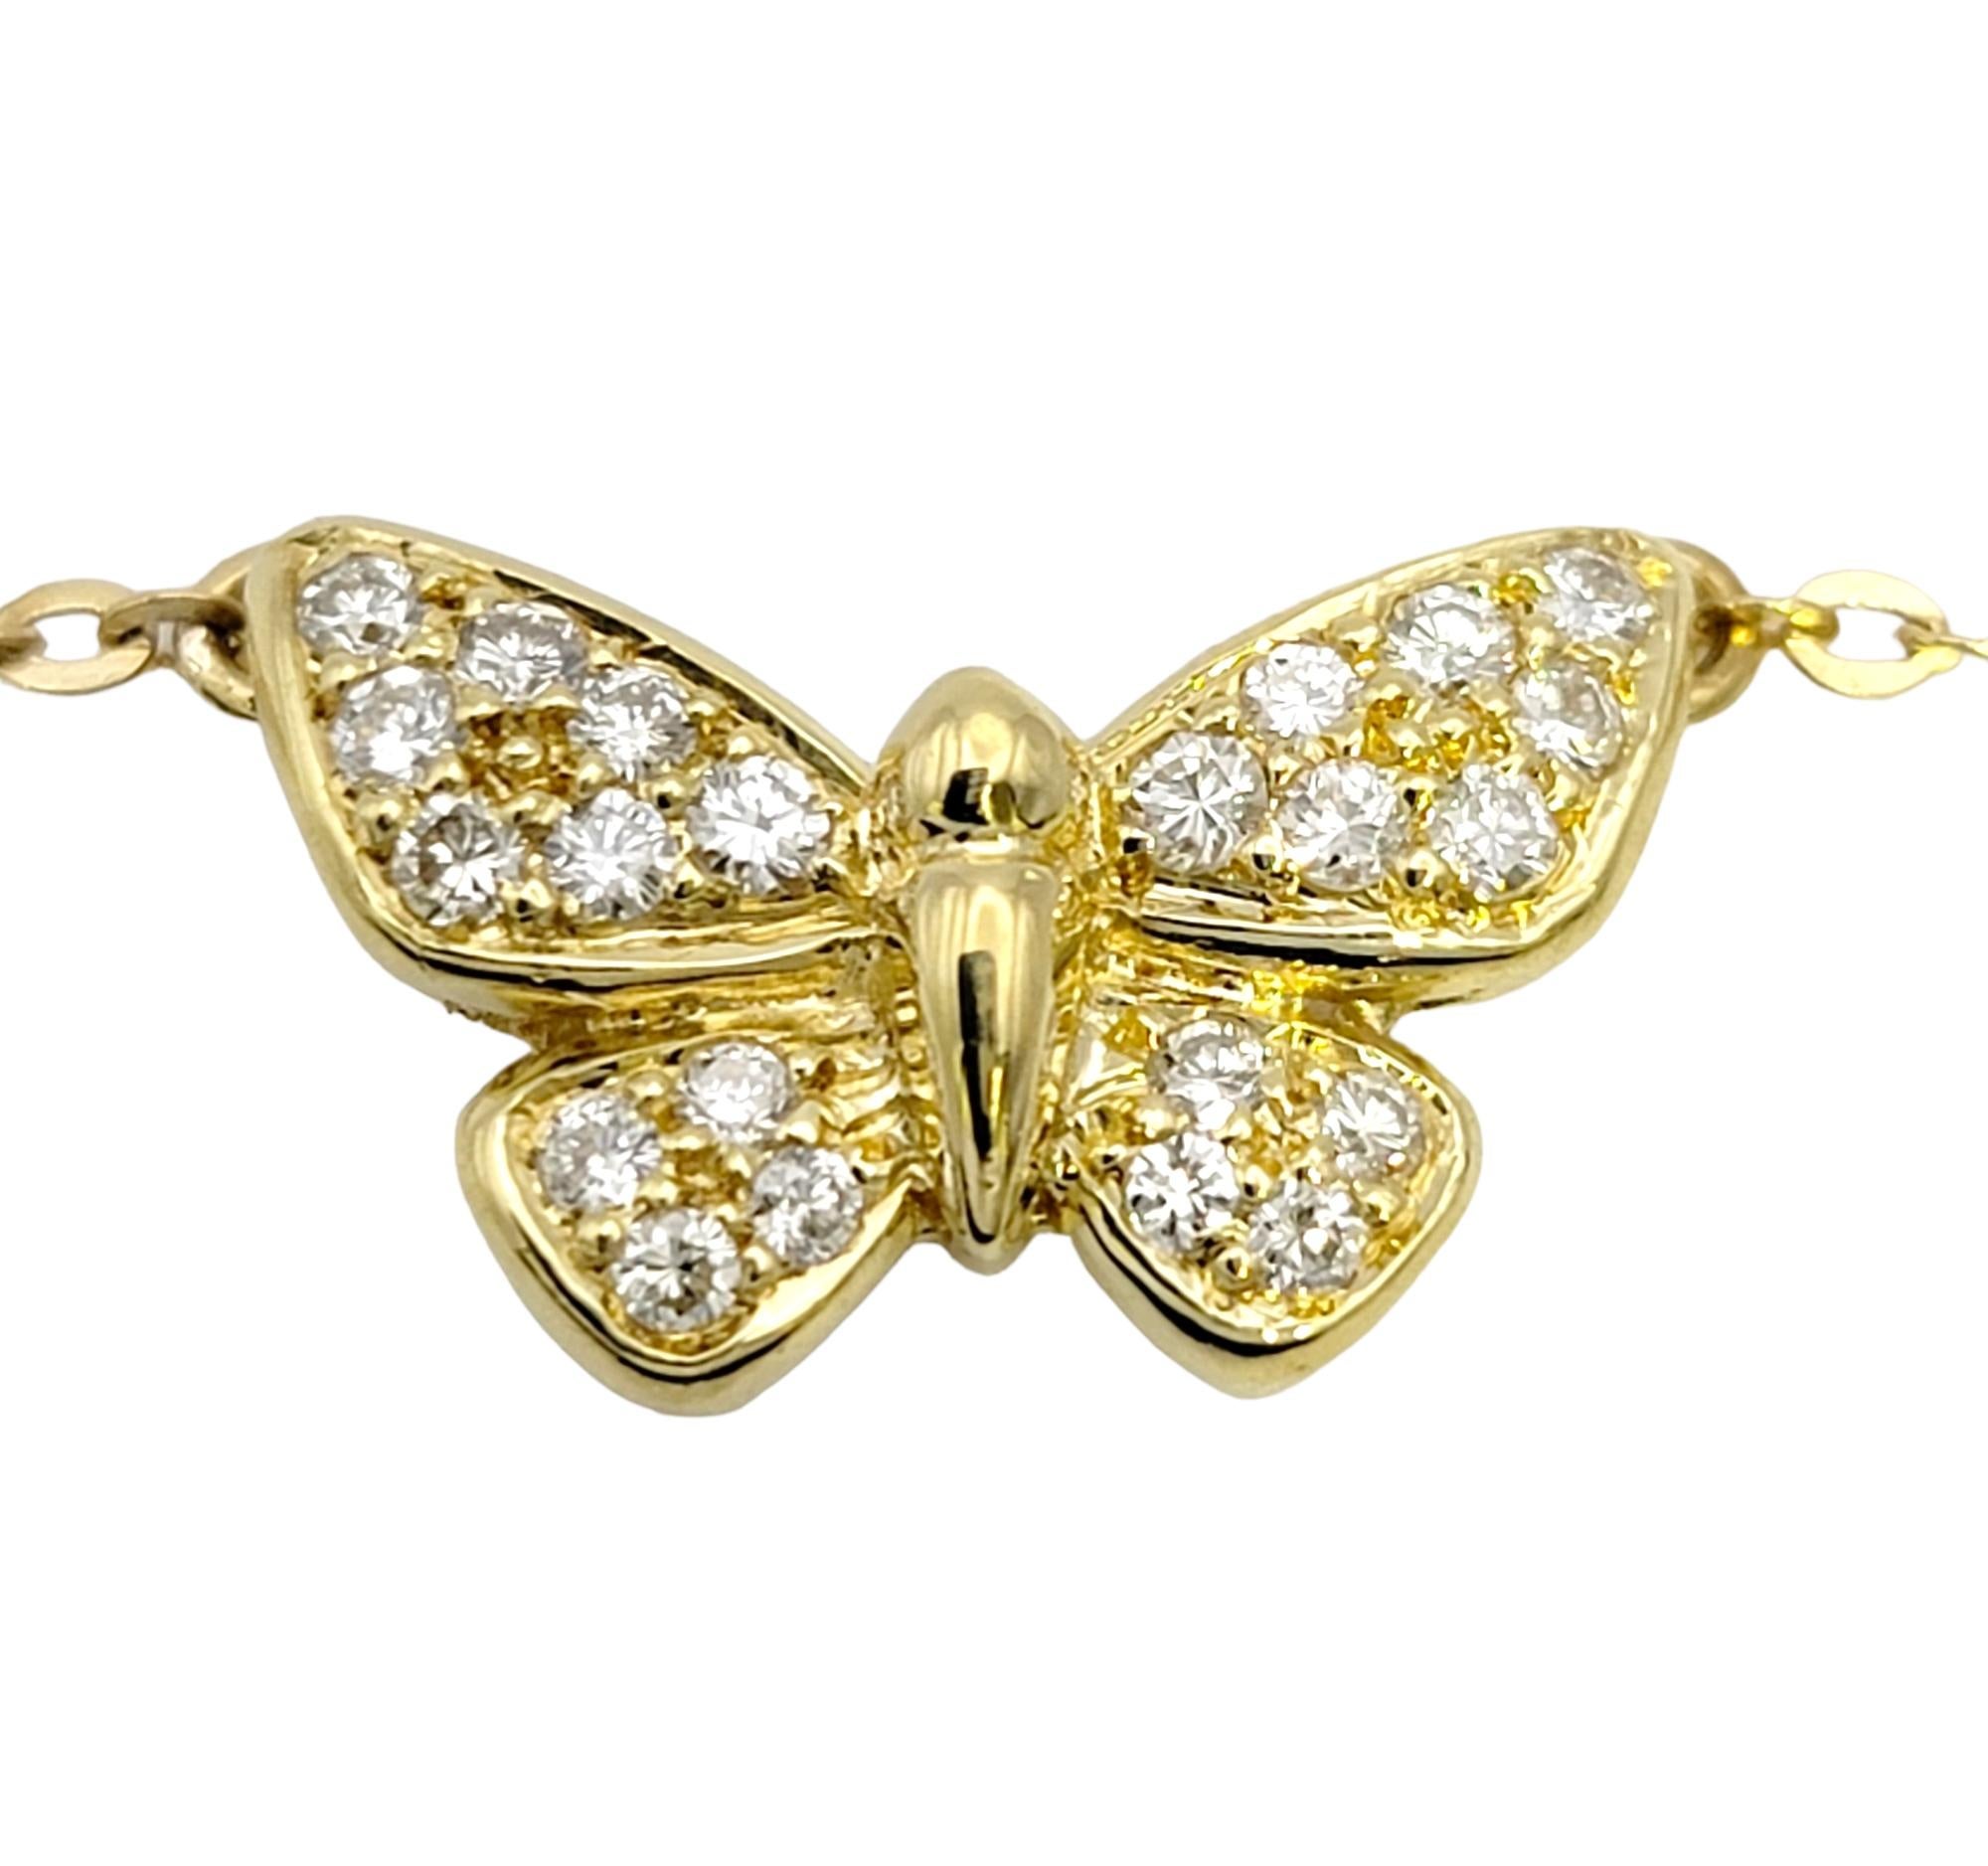 Erleben Sie den Zauber dieser exquisiten Schmetterlingshalskette mit Anhänger. Dieses faszinierende Stück ist eine Hommage an die Schönheit der Natur und das ewige Funkeln der Diamanten.

Der aus glänzendem 18-karätigem Gelbgold gefertigte Anhänger